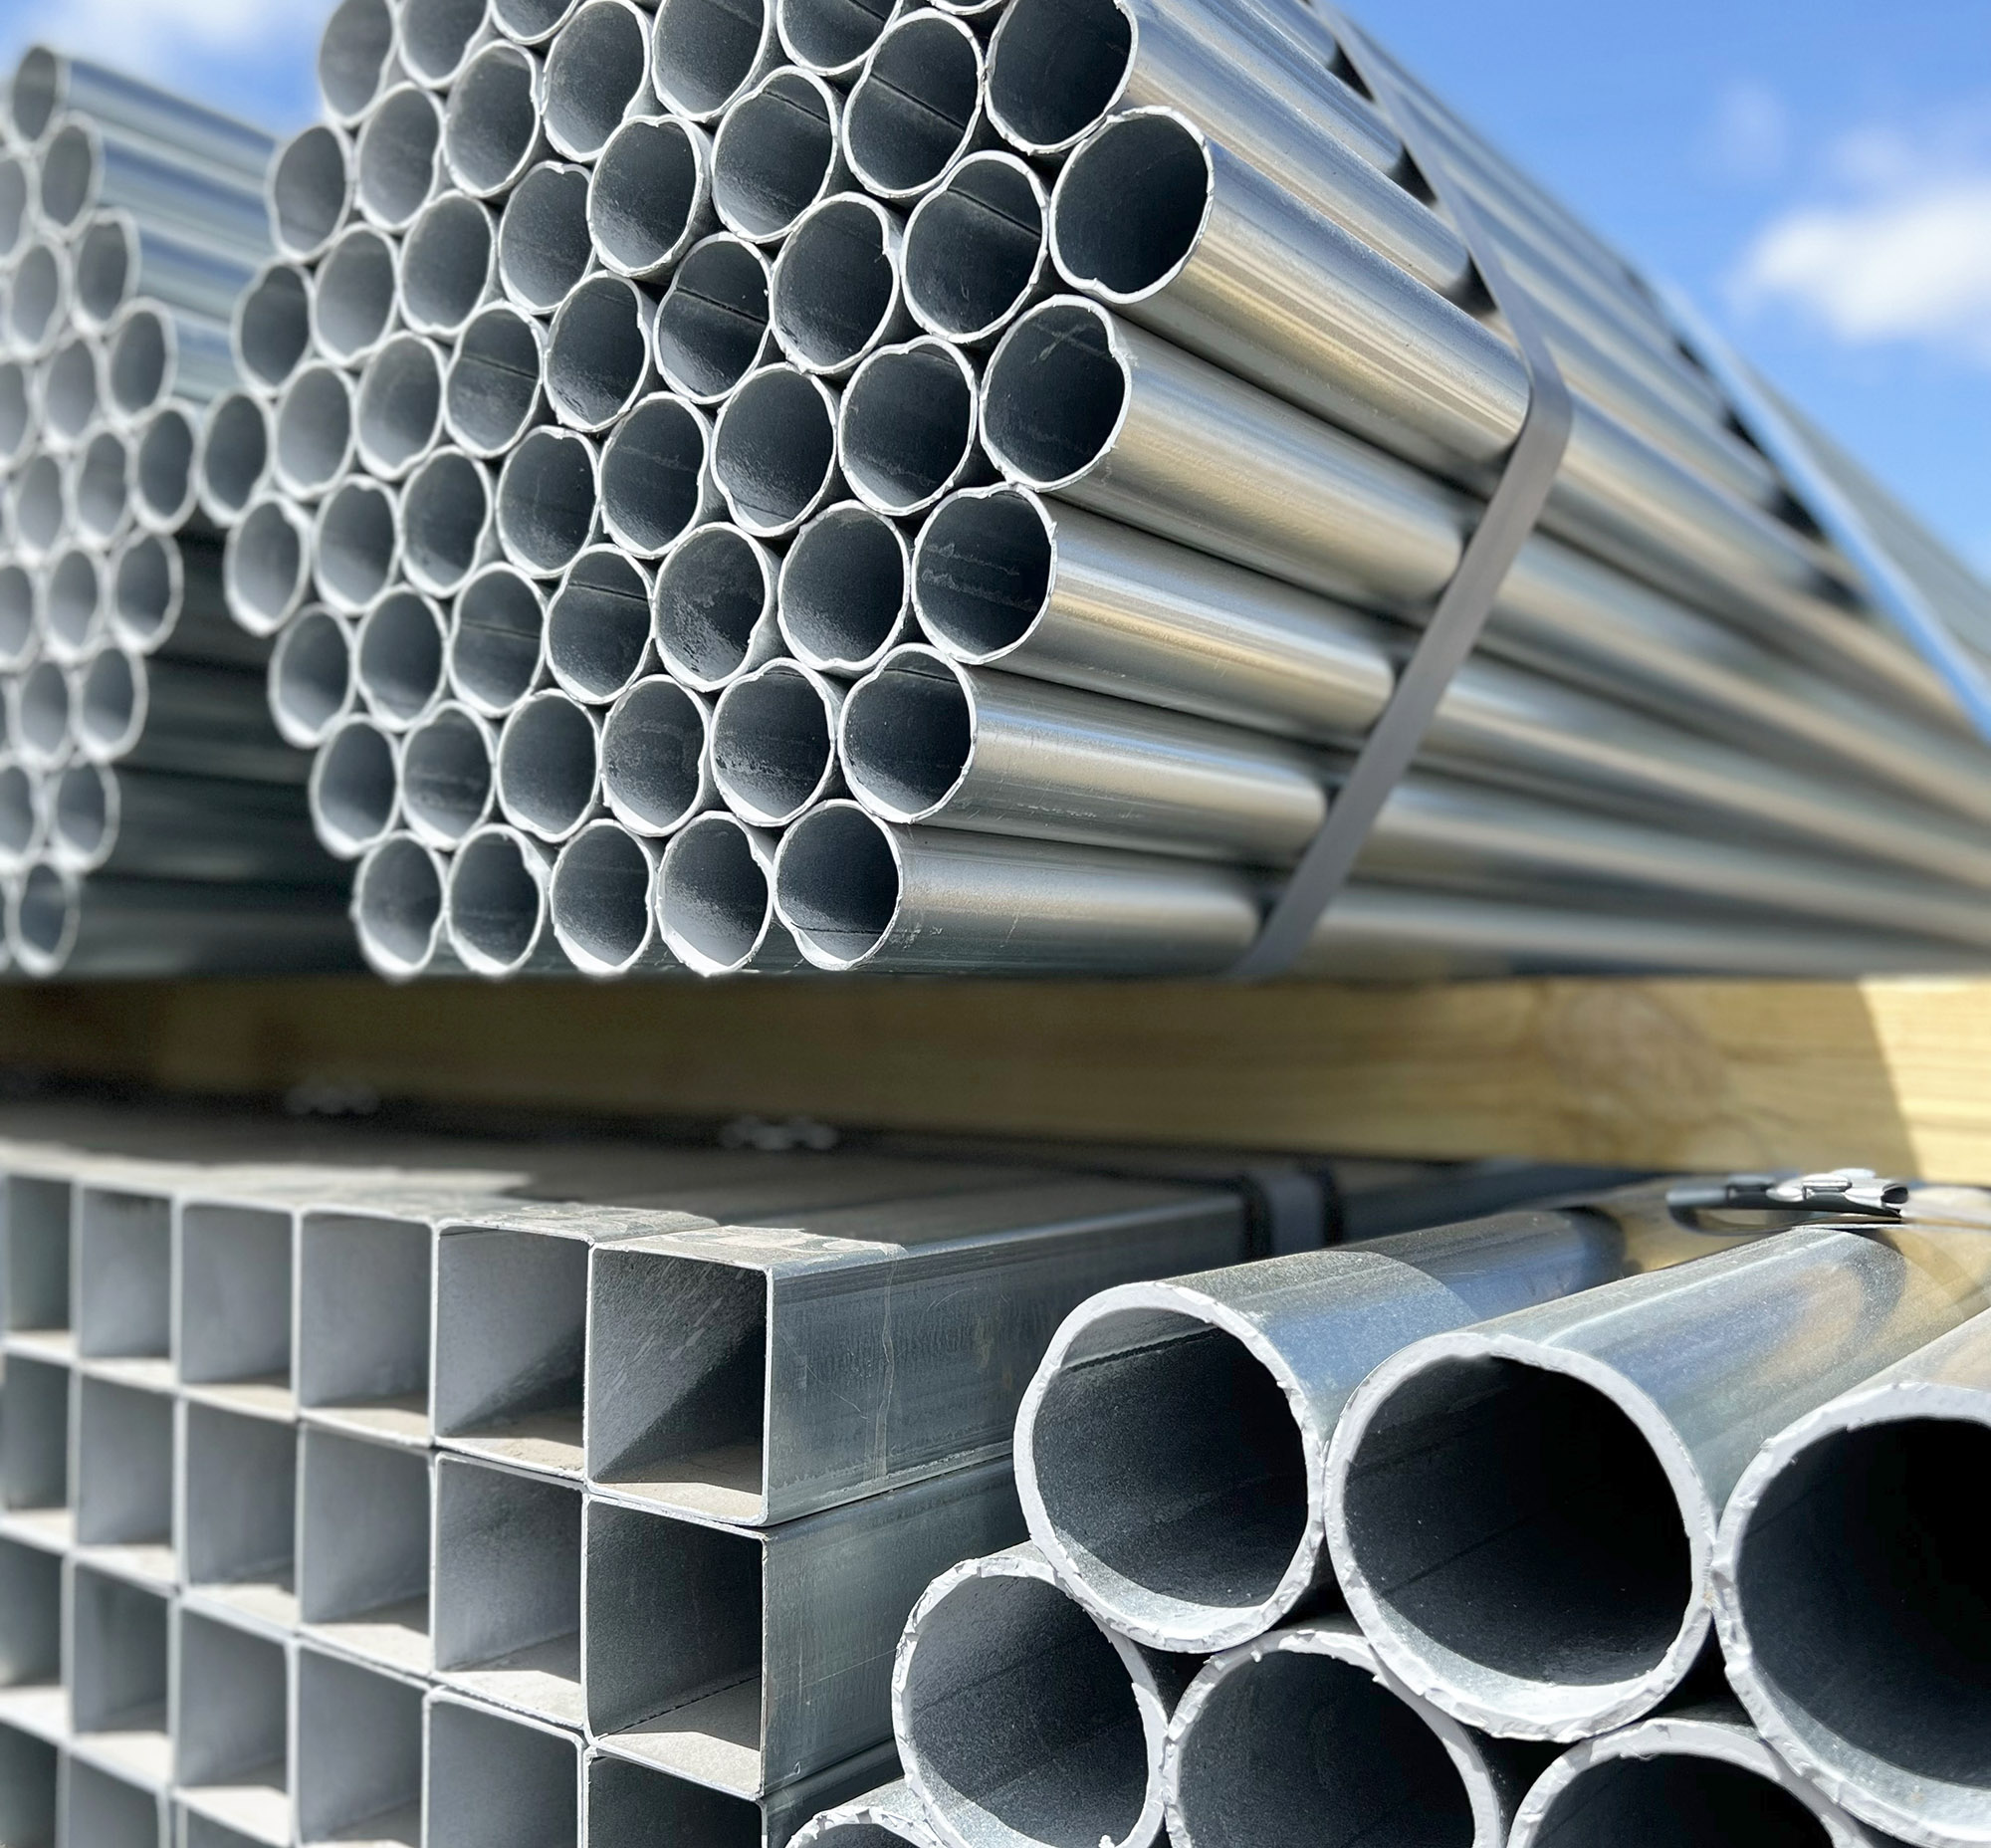 Steel Tubing In Bundles On Rack